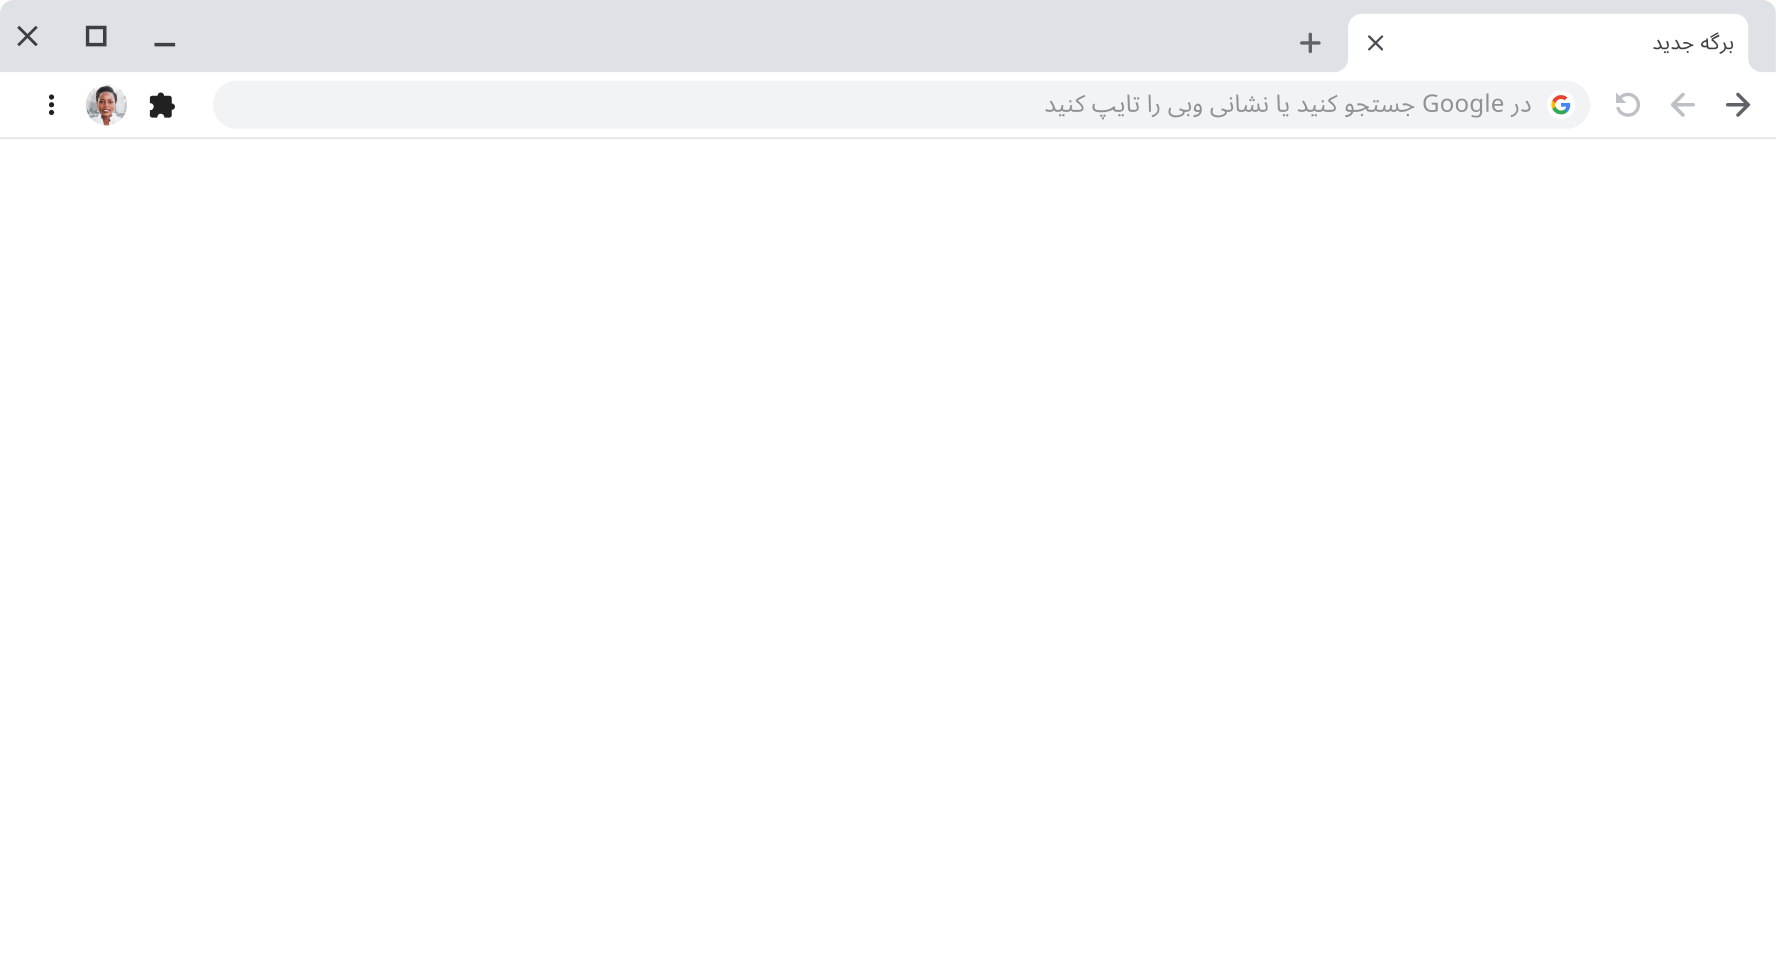 پنجره مرورگر Chrome با نوار نشانی خالی.